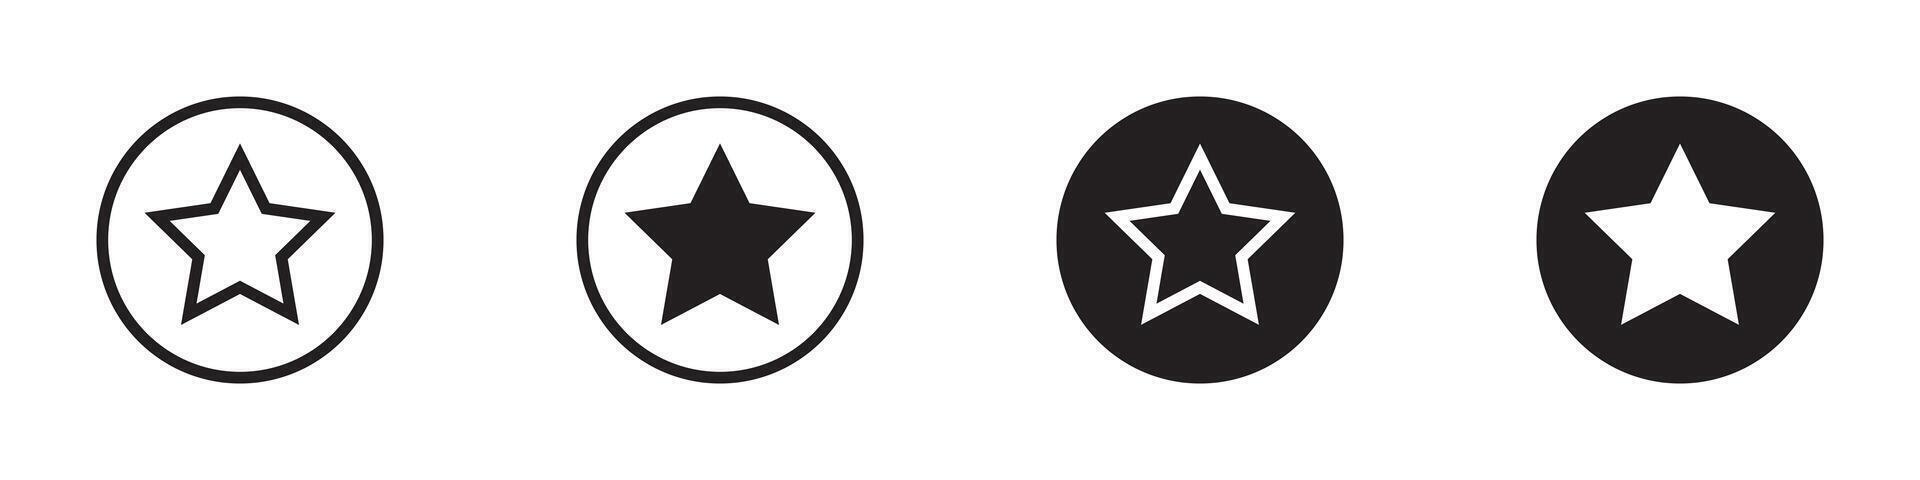 stjärna ikon uppsättning. vektor illustration.